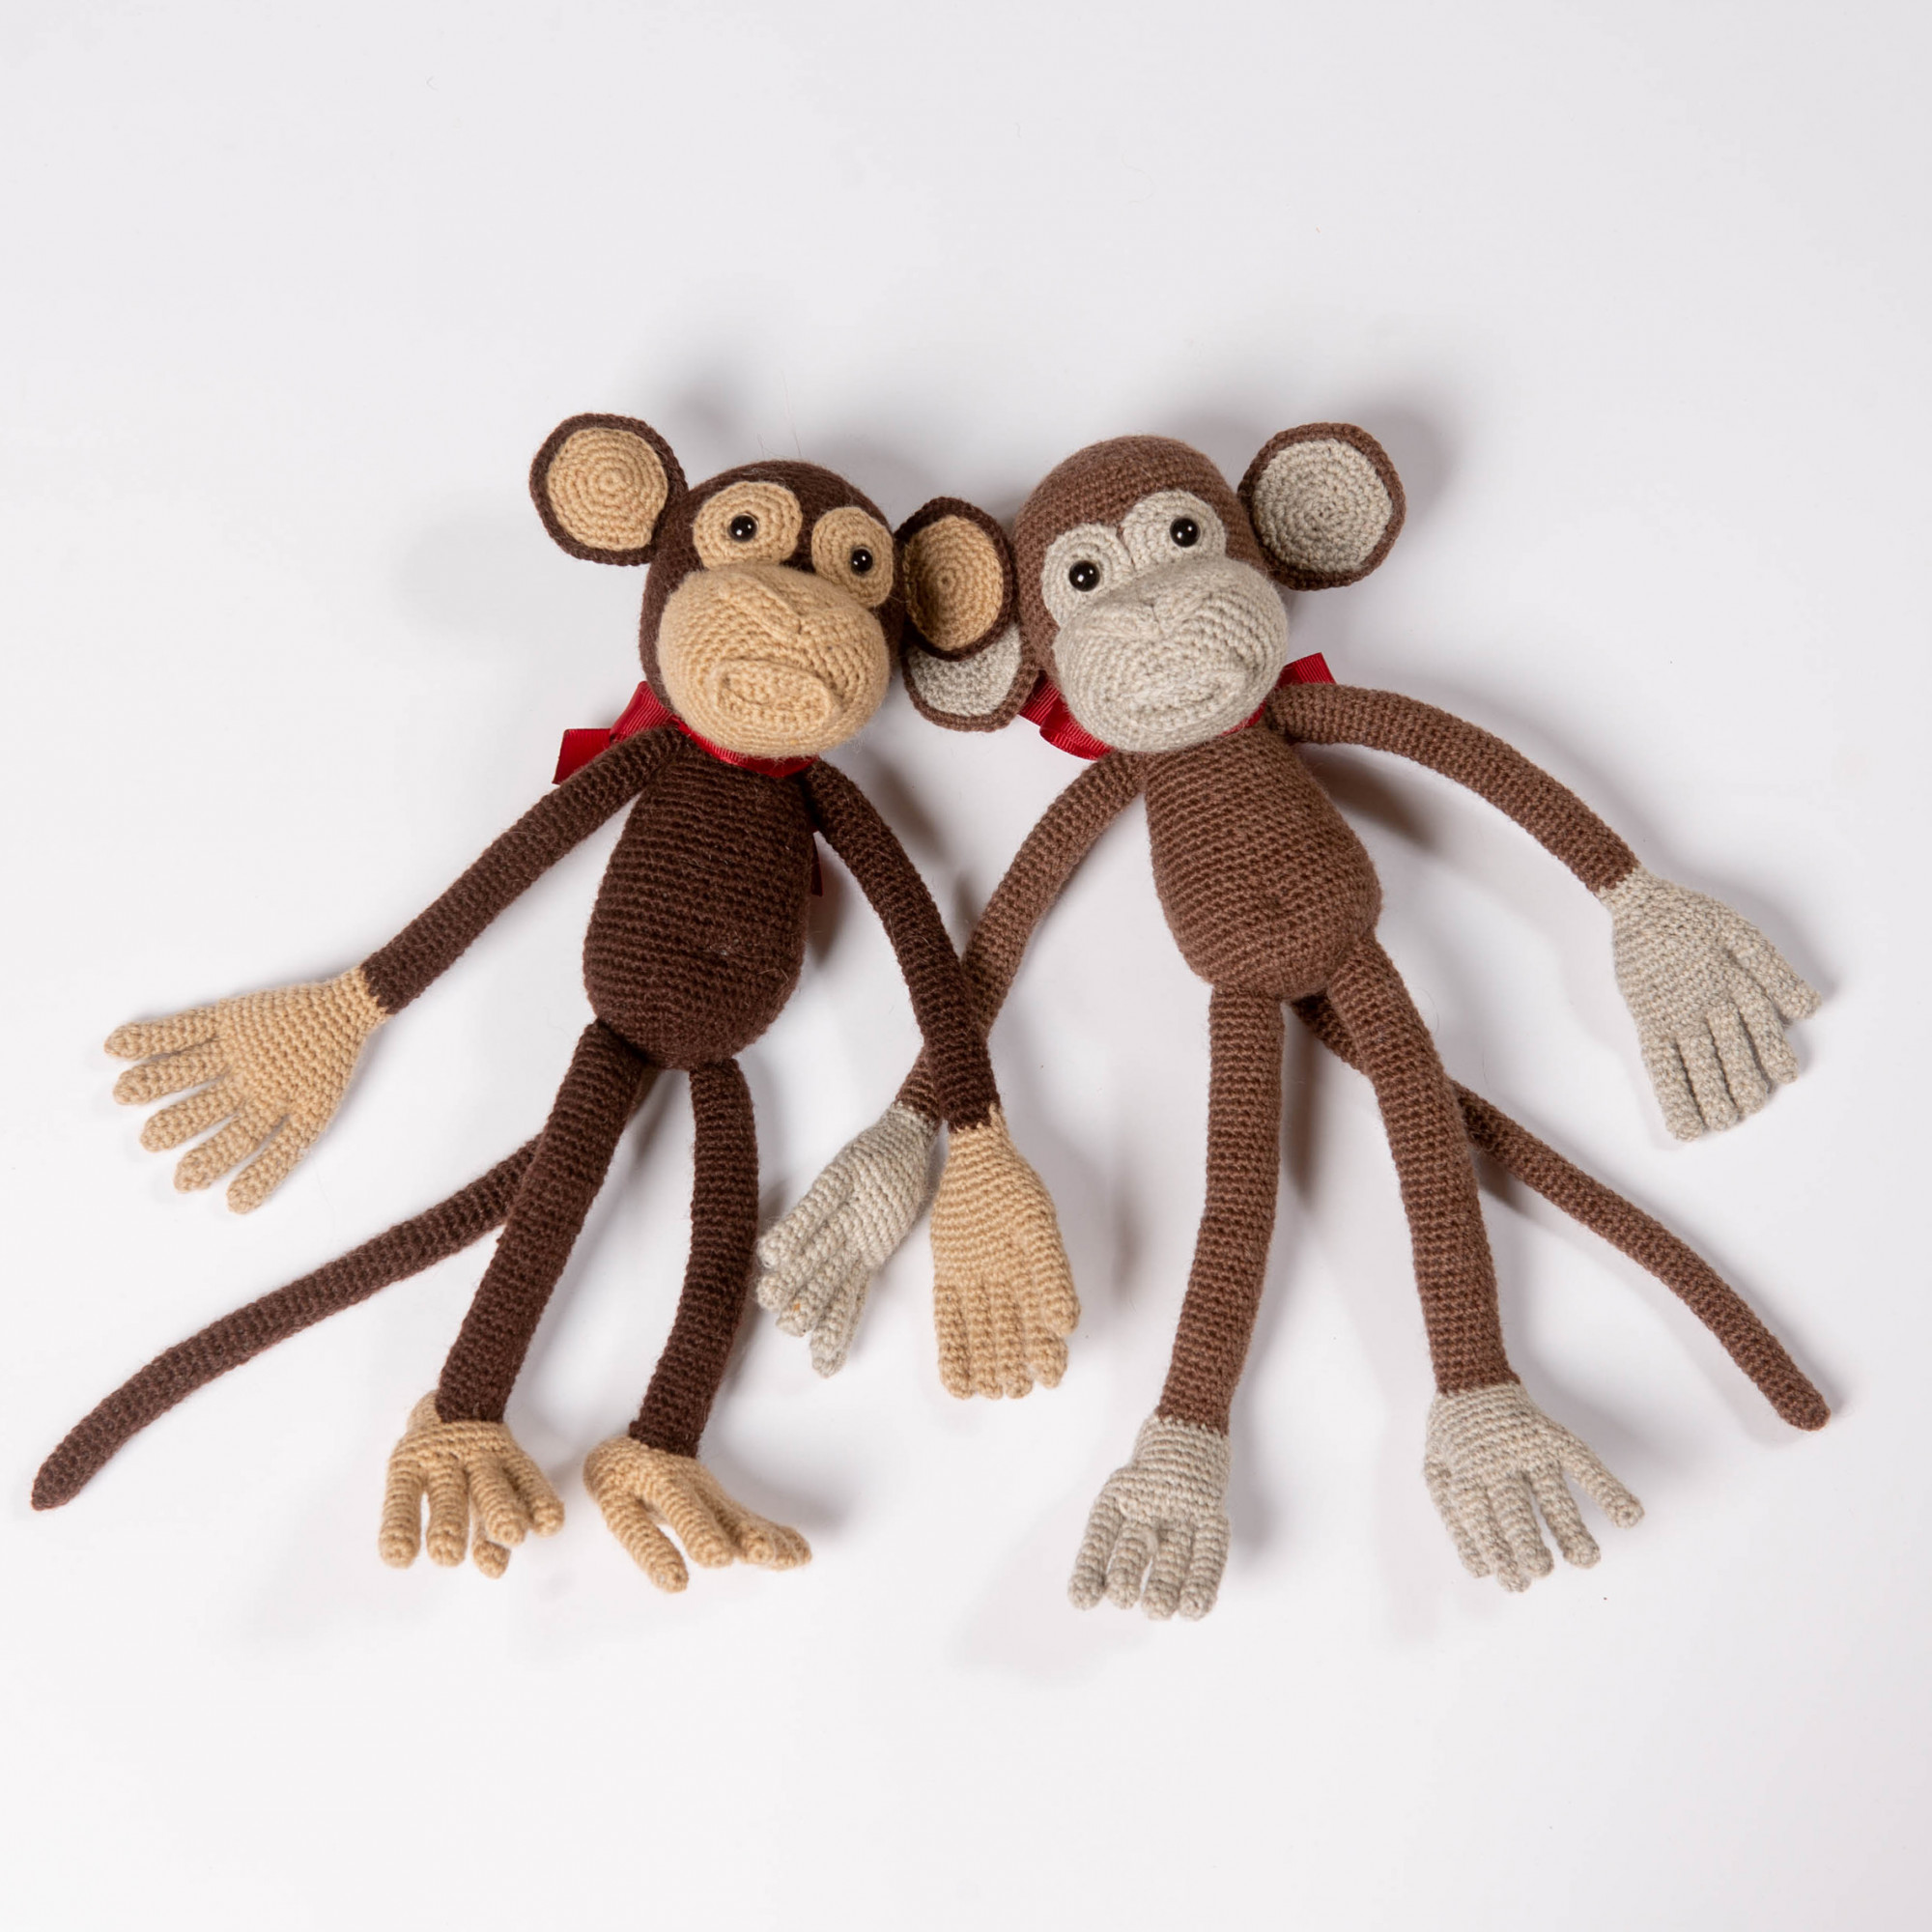 Buy Gift Monkeys Friendly, Funny soft toys